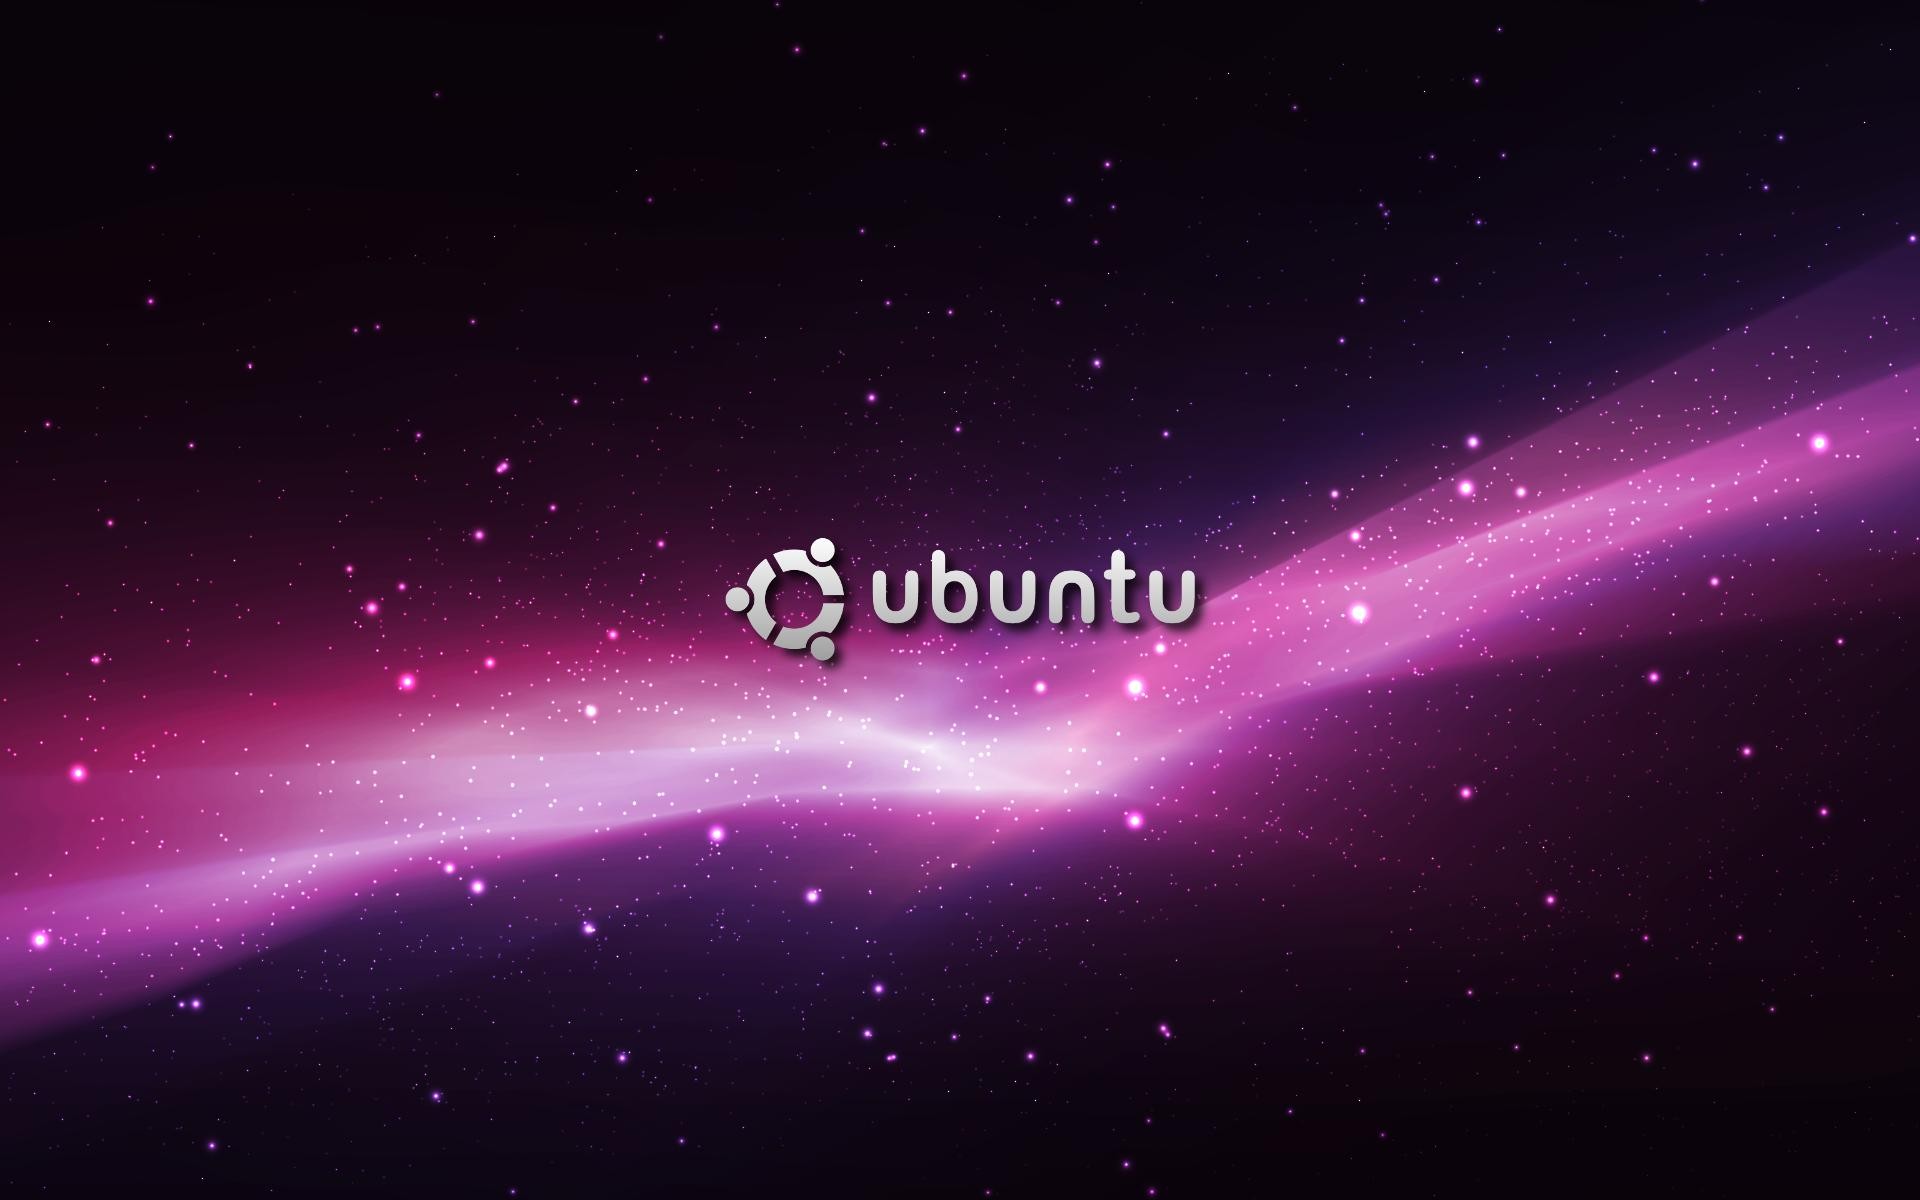  Ubuntu  Wallpapers  HD  Desktop  PixelsTalk Net